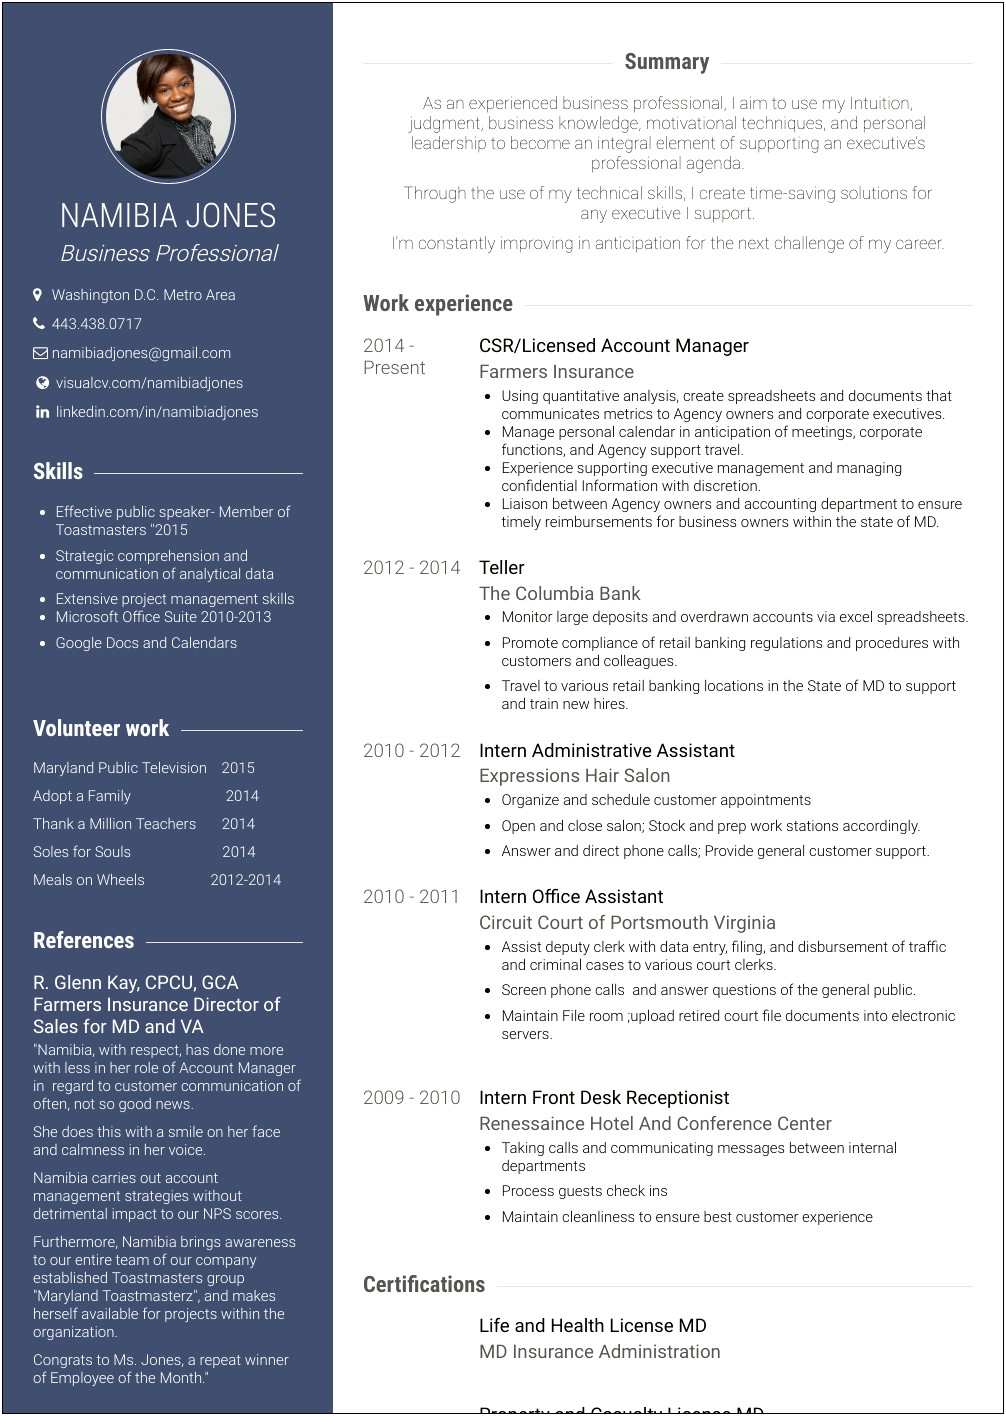 Jobs Description Corporate Responibility Resume